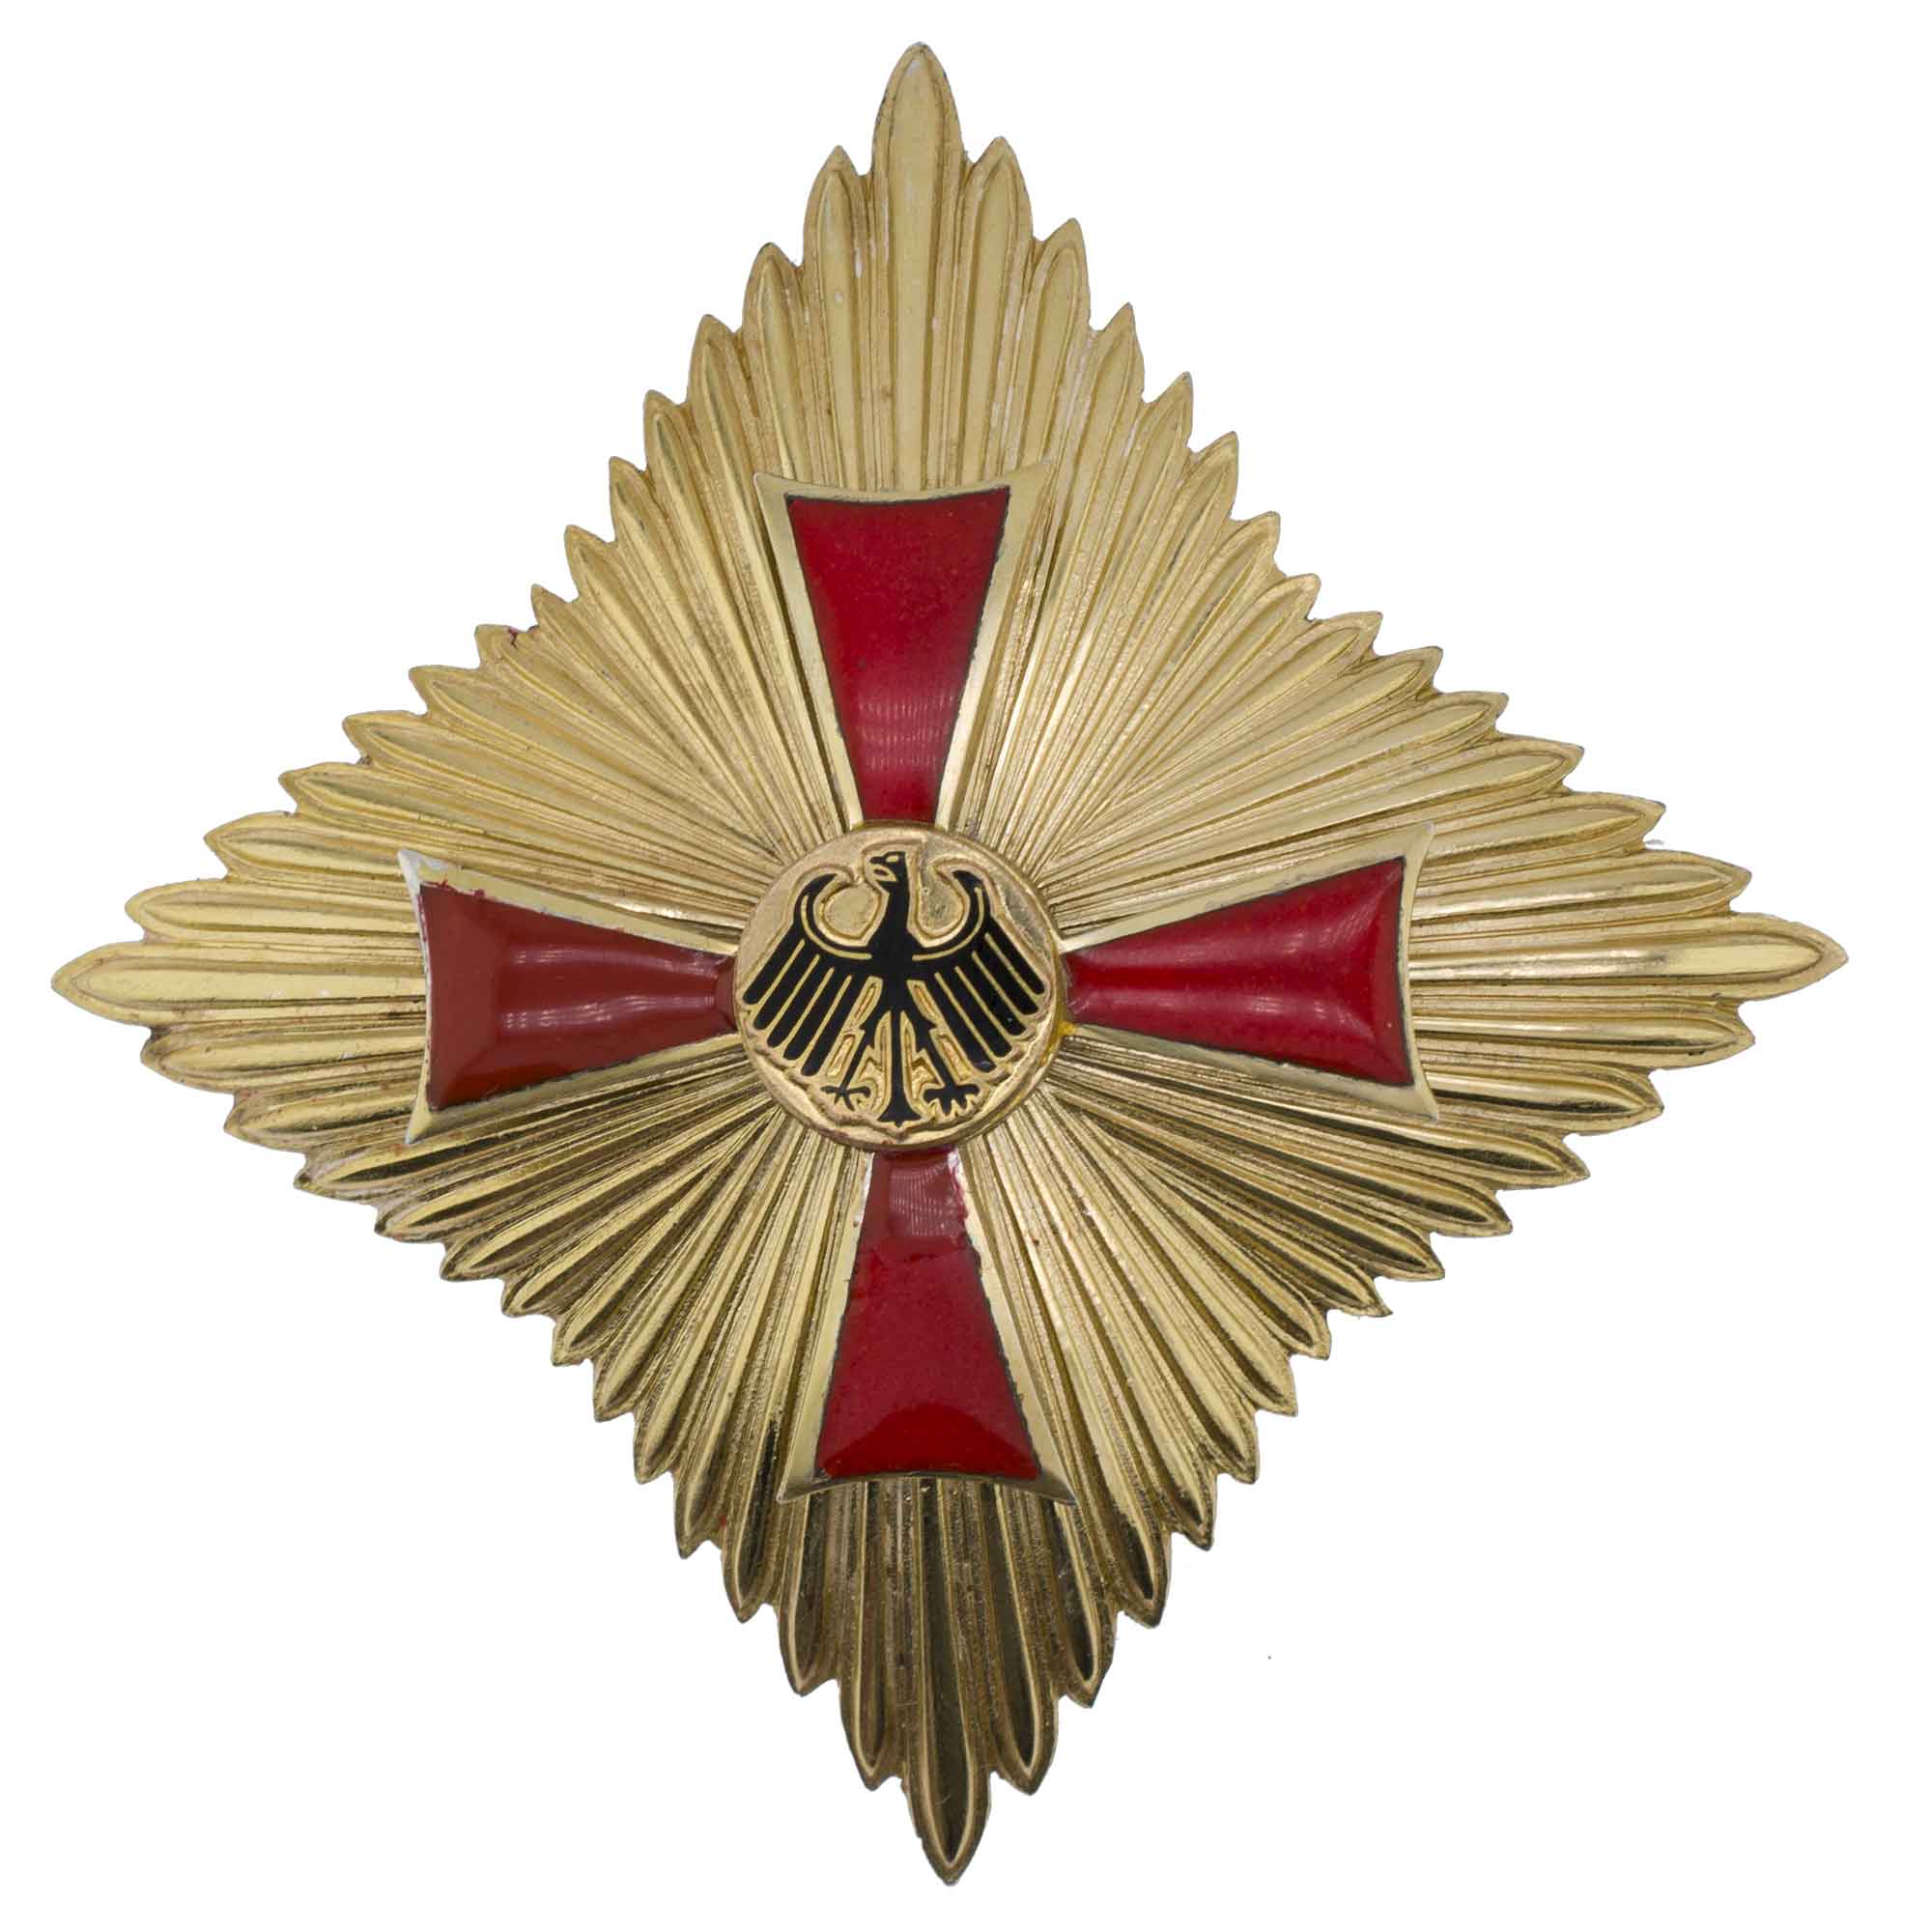 Германия. Звезда Ордена Большого креста "За заслуги перед Федеративной Республикой Германия".